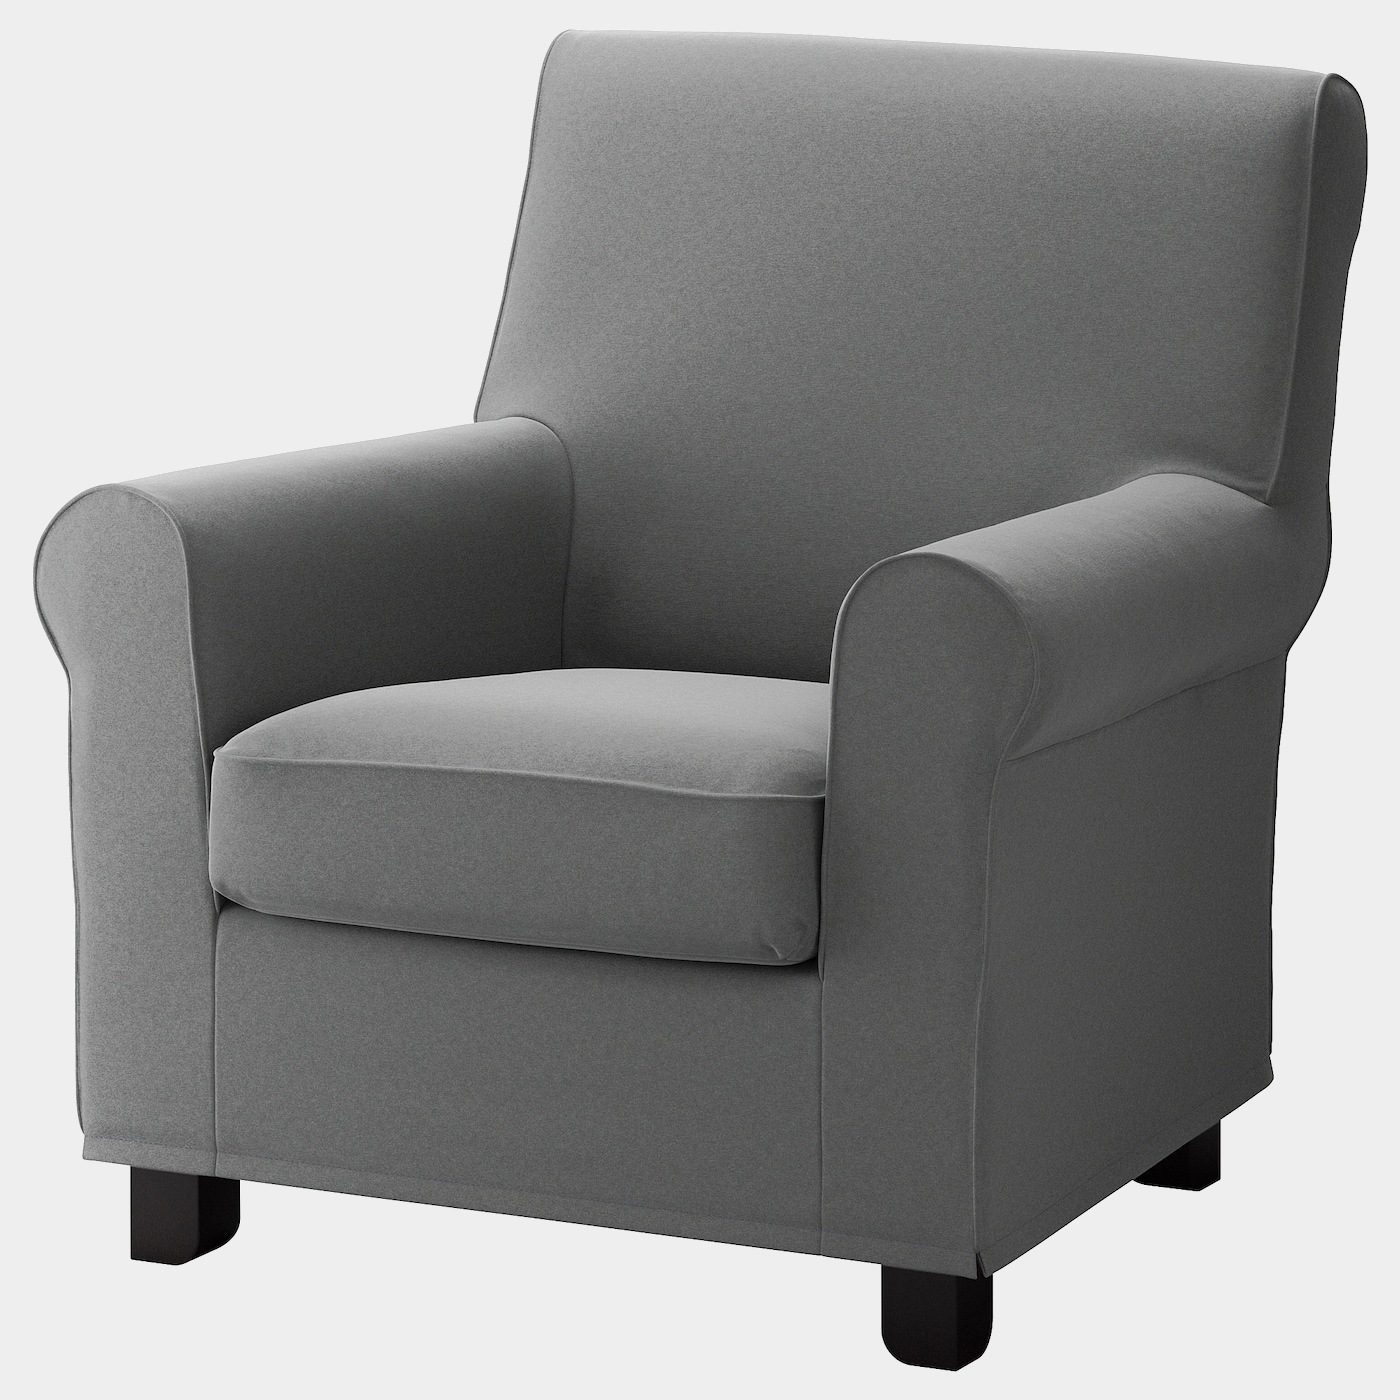 GRÖNLID Bezug für Sessel  - extra Bezüge - Möbel Ideen für dein Zuhause von Home Trends. Möbel Trends von Social Media Influencer für dein Skandi Zuhause.